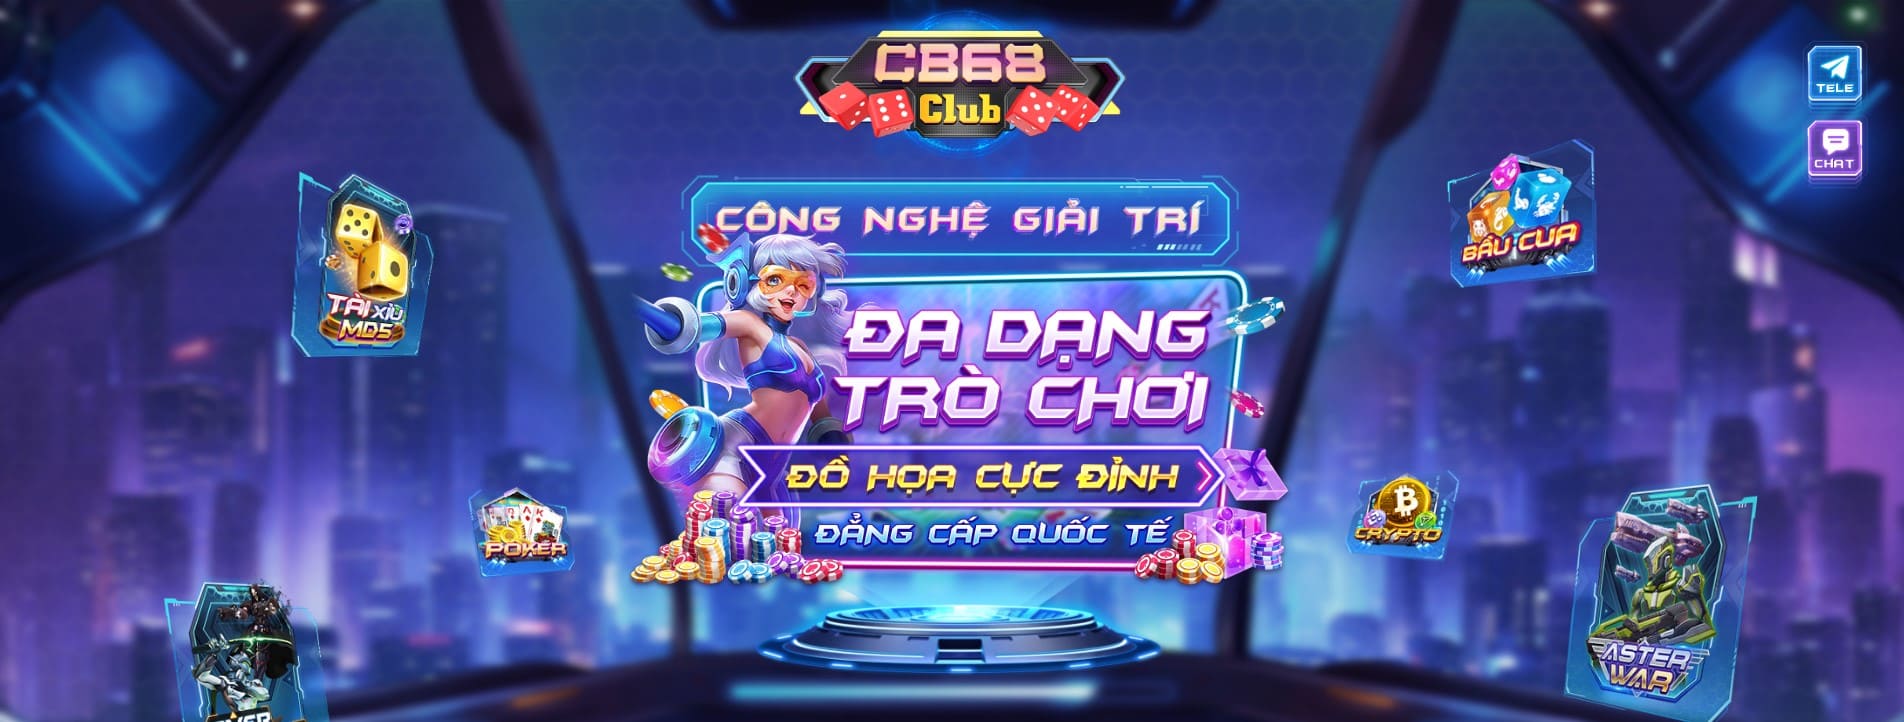 cb68 club game bai cong nghe tai cb68club ios androi